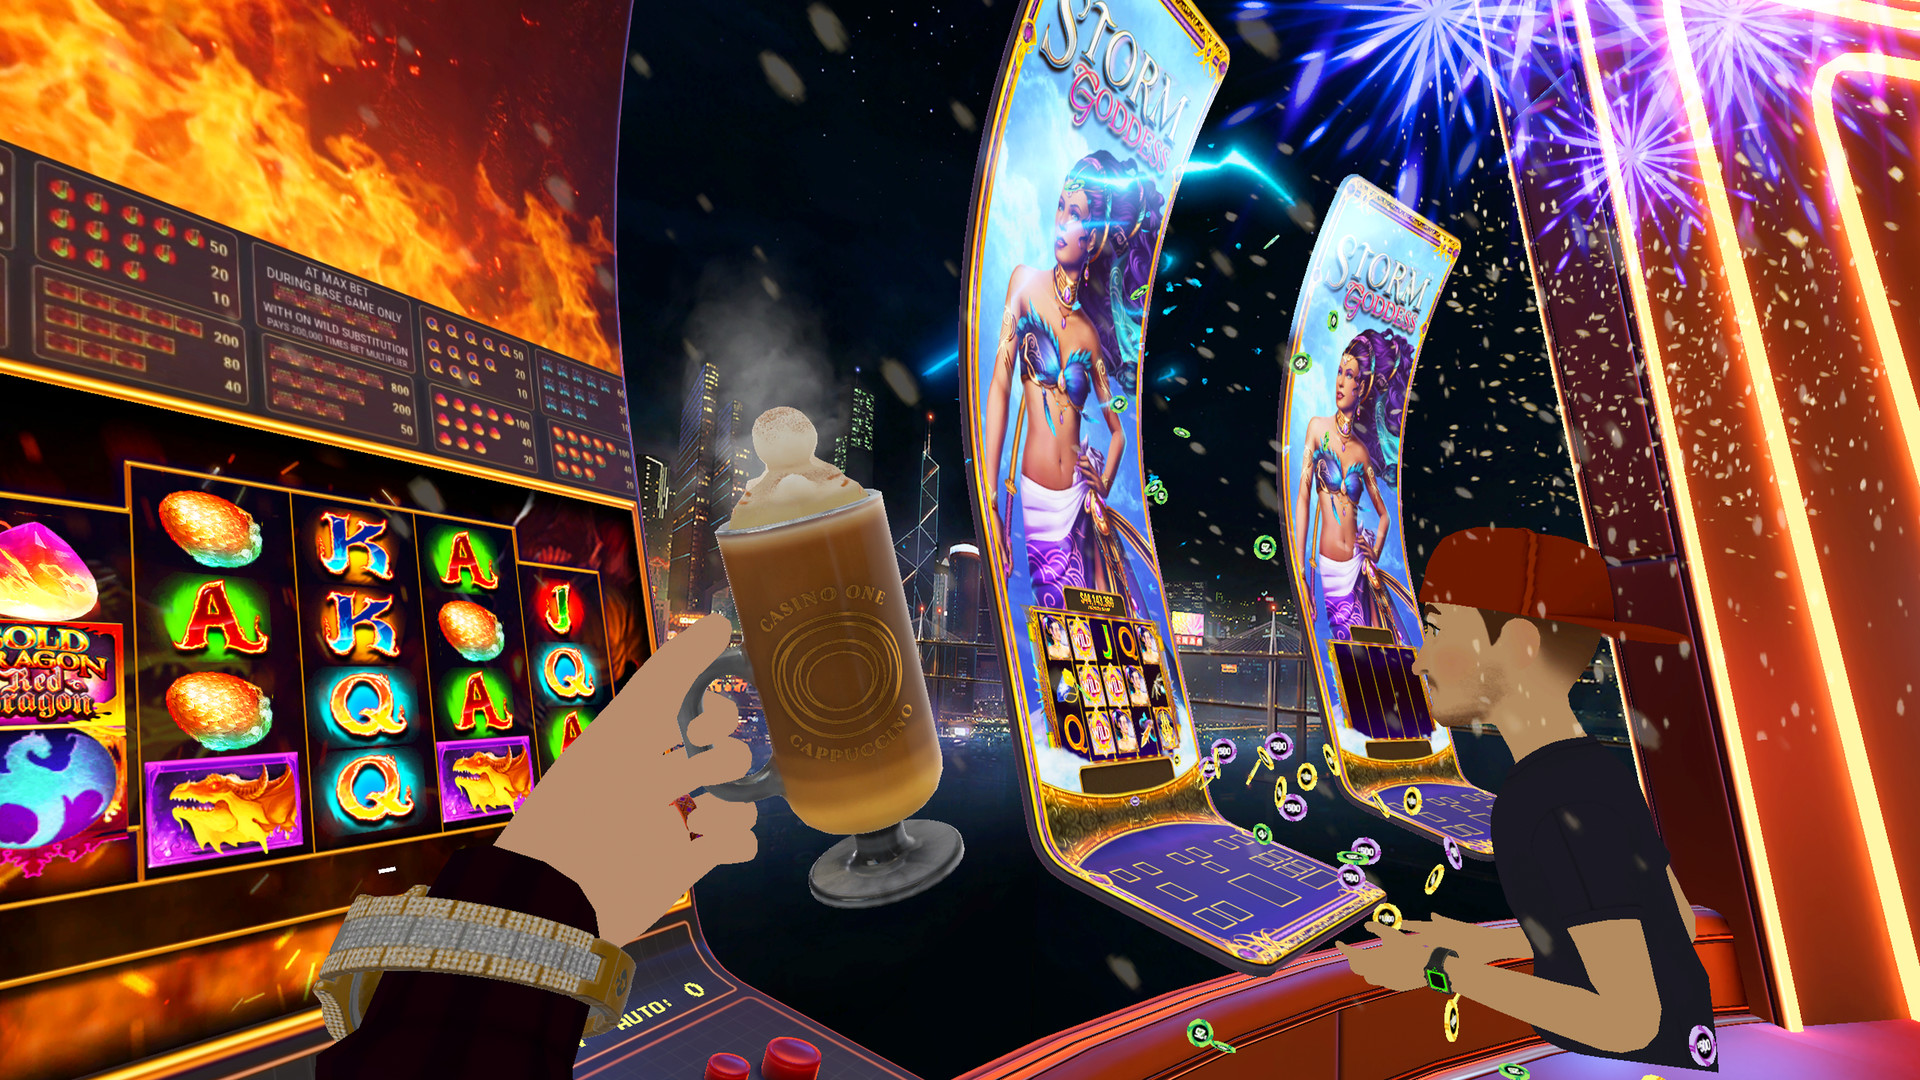 Objector Krav sokker PokerStars VR on Steam